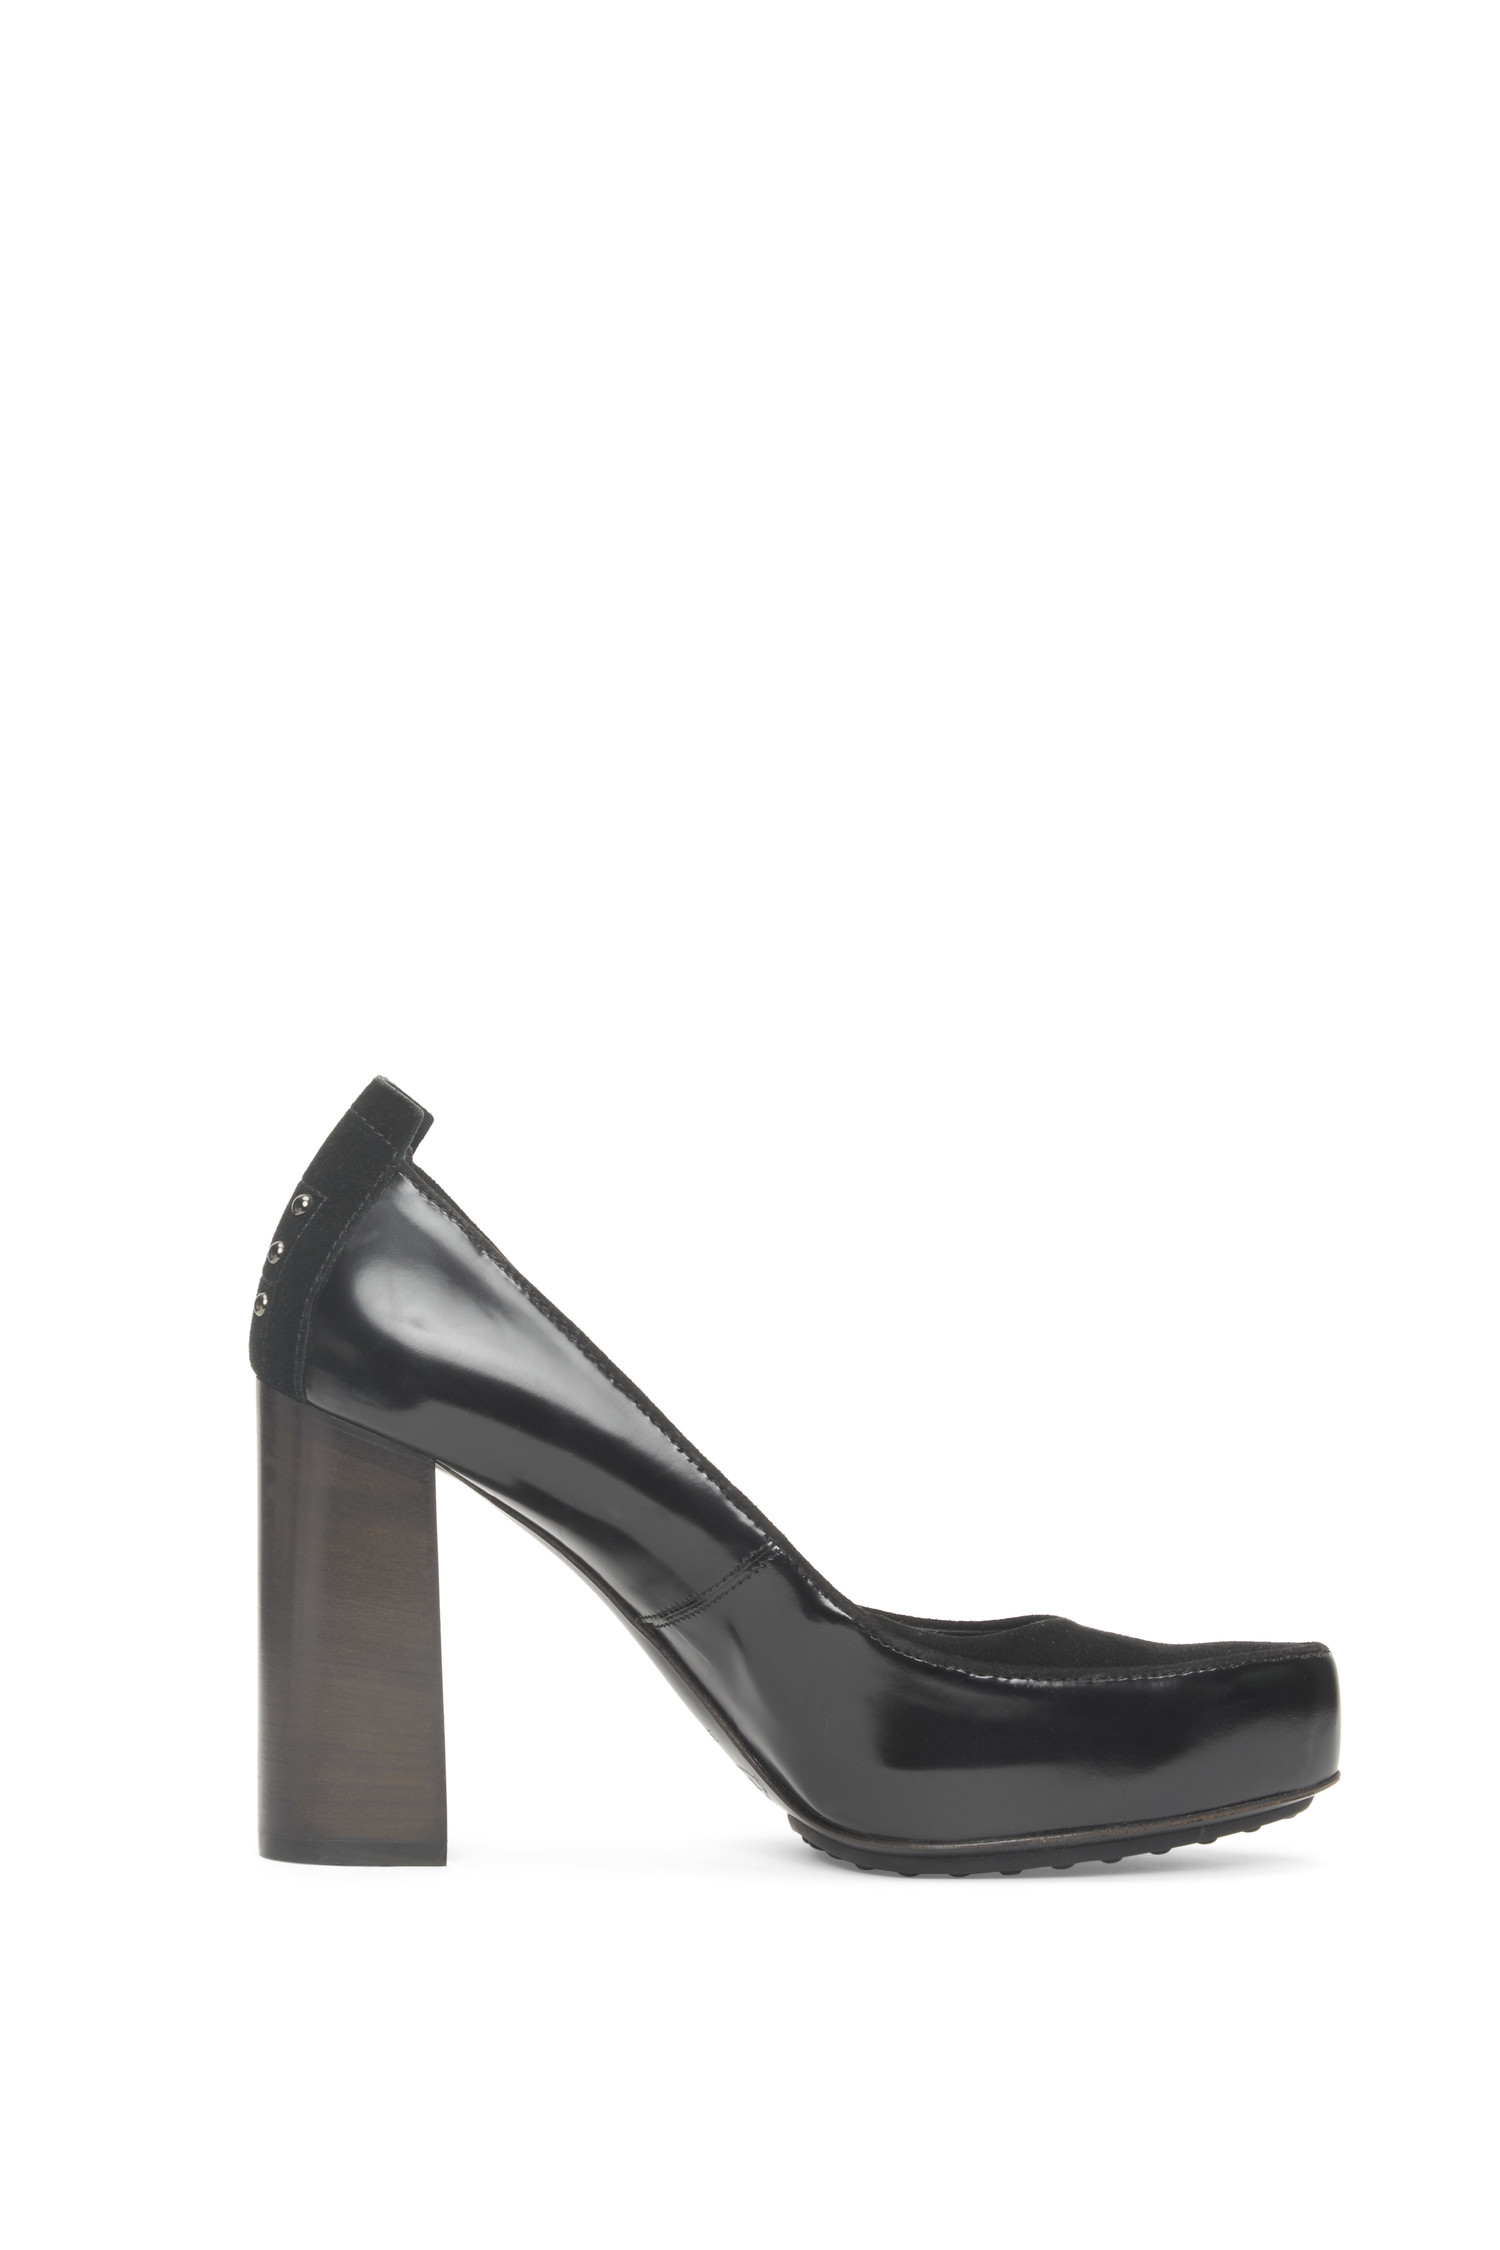 tod's black suede block heel pumps